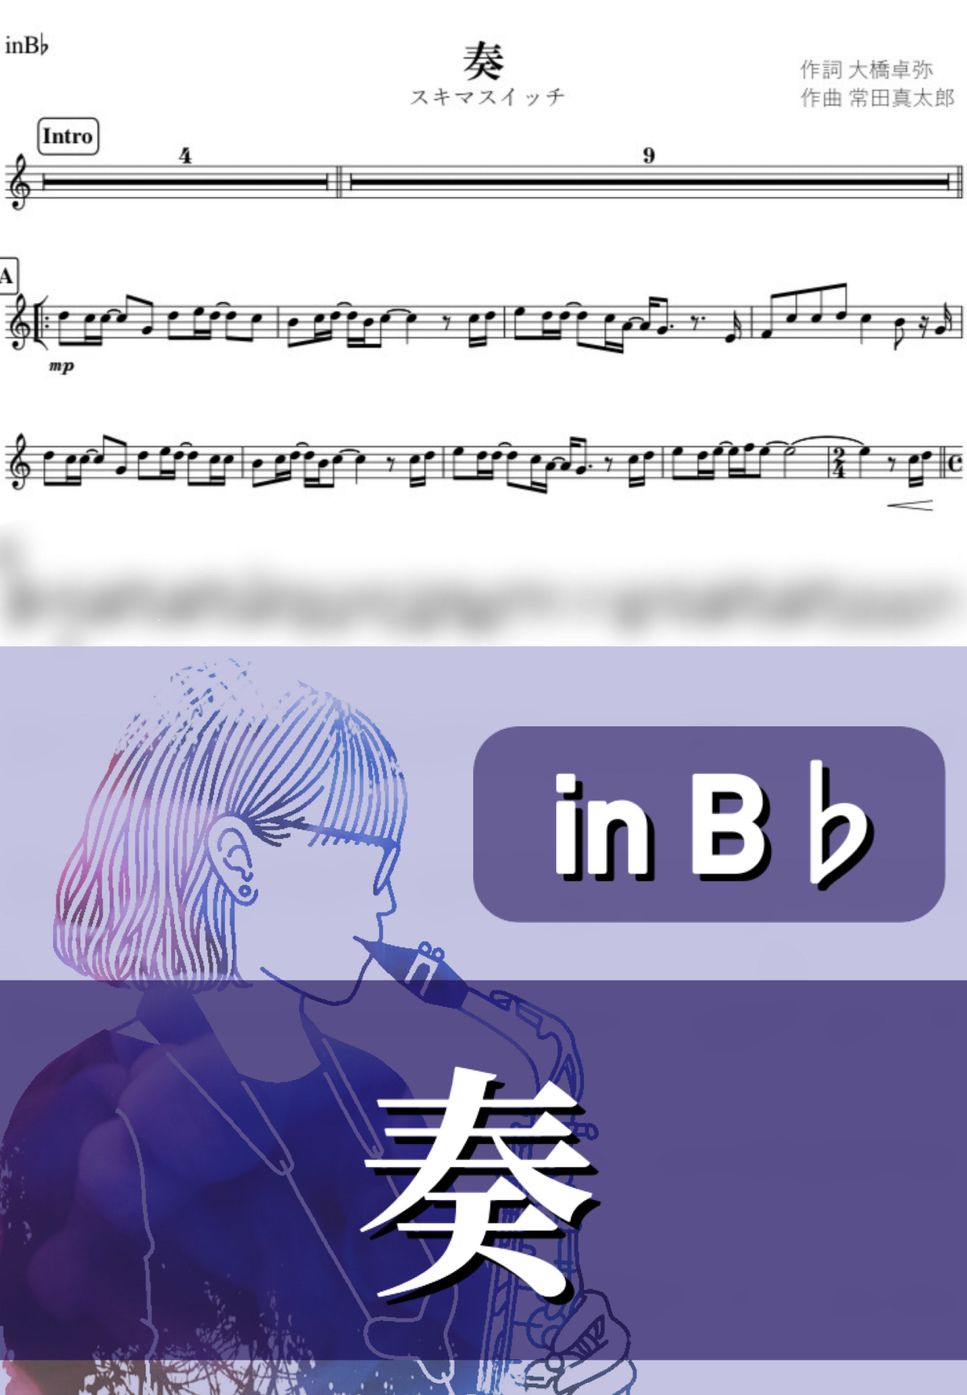 スキマスイッチ - 奏 (B♭) by kanamusic